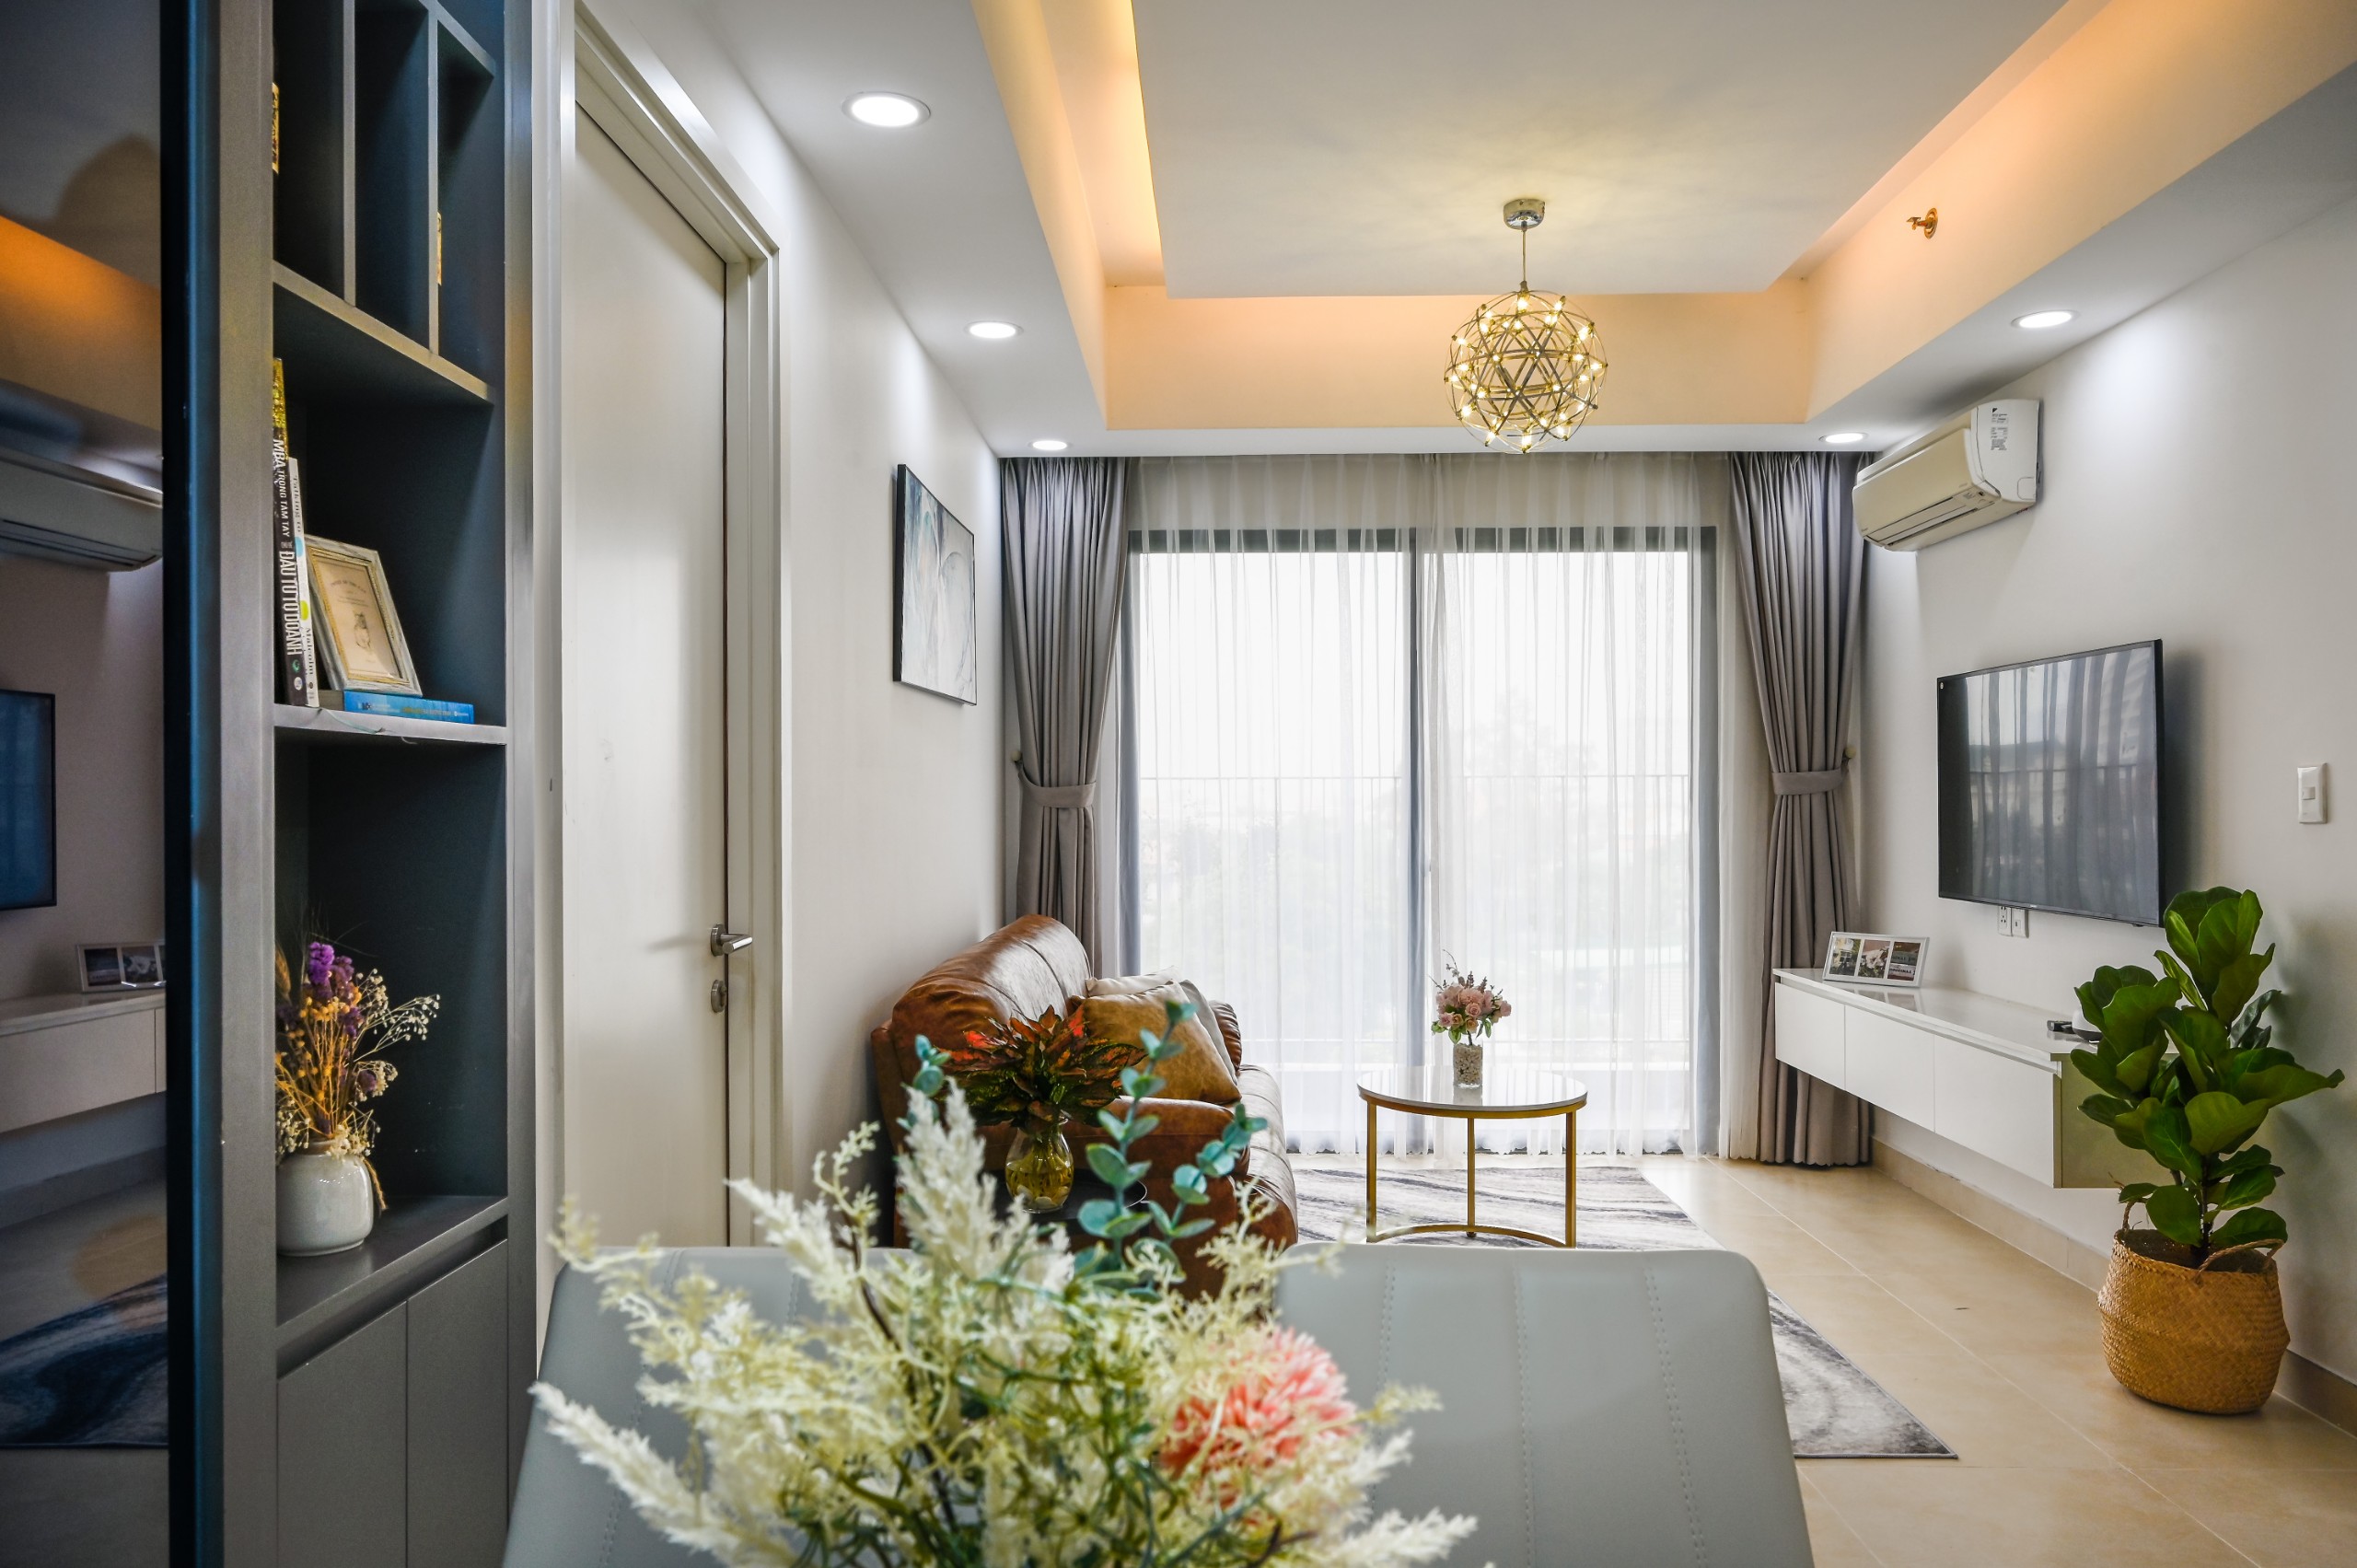 Bán căn hộ Masteri Thảo Điền, 2PN Giá 3,5 tỉ, 2PN Giá 4-4,5 tỉ. LH 0909988697